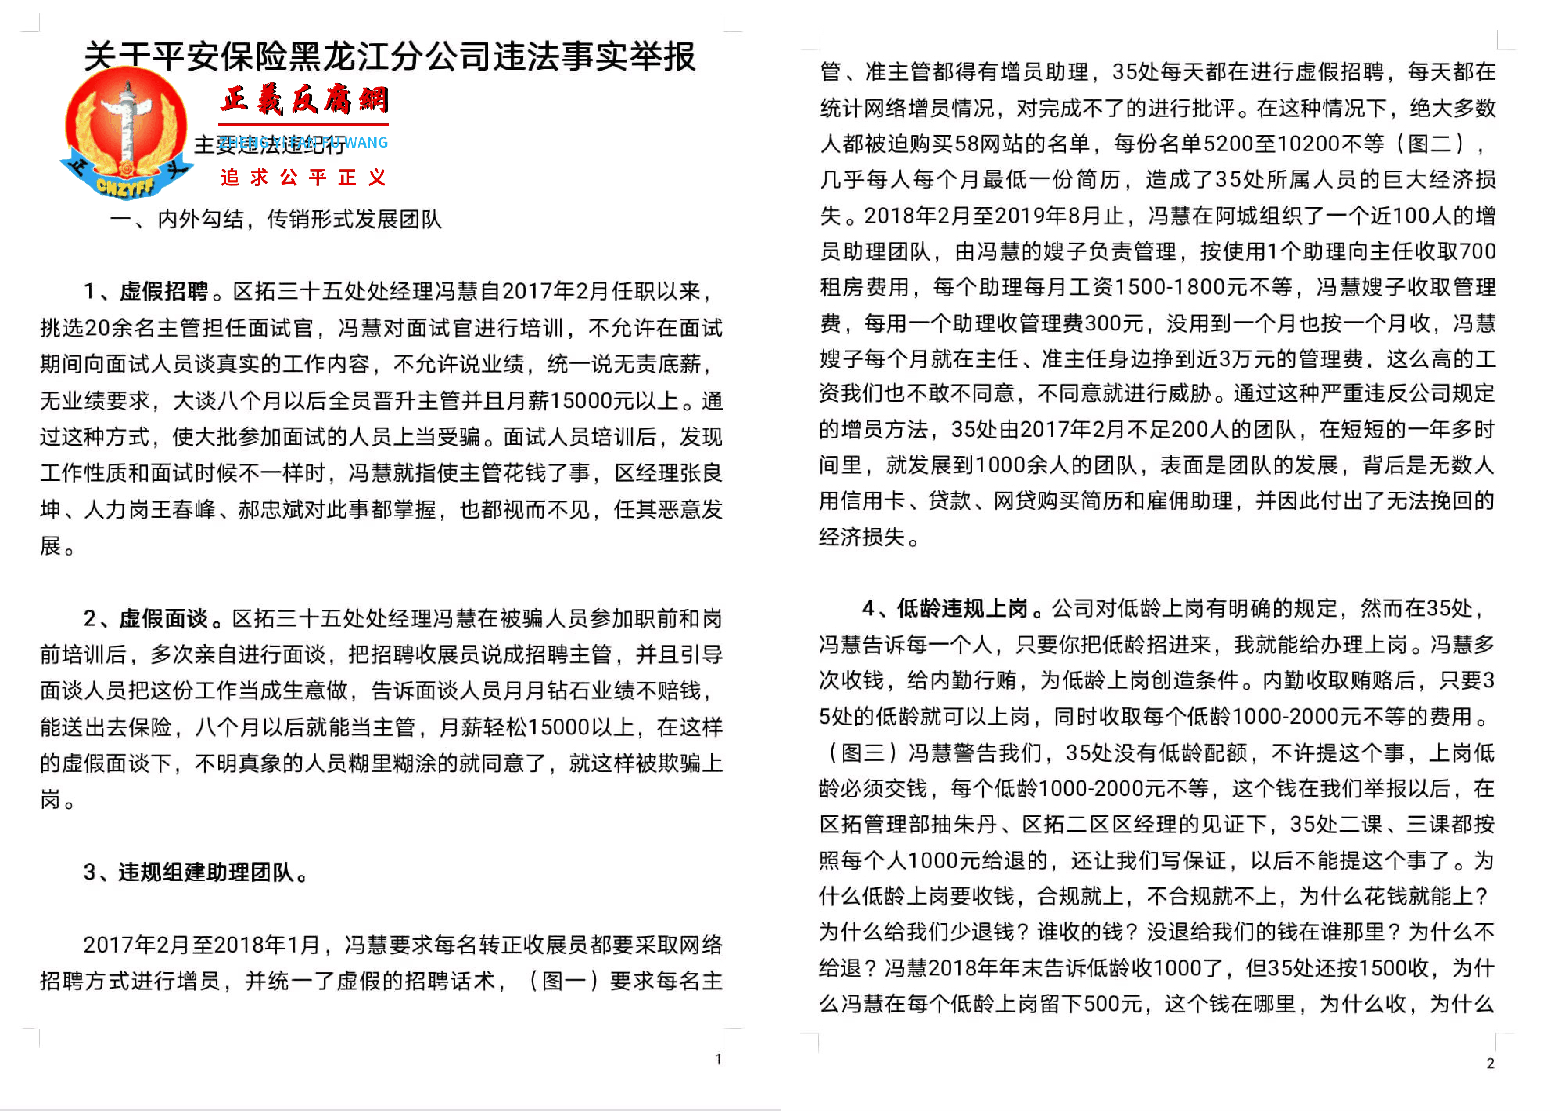 关于平安保险黑龙江分公司违法事实举报第一、二页合成.png